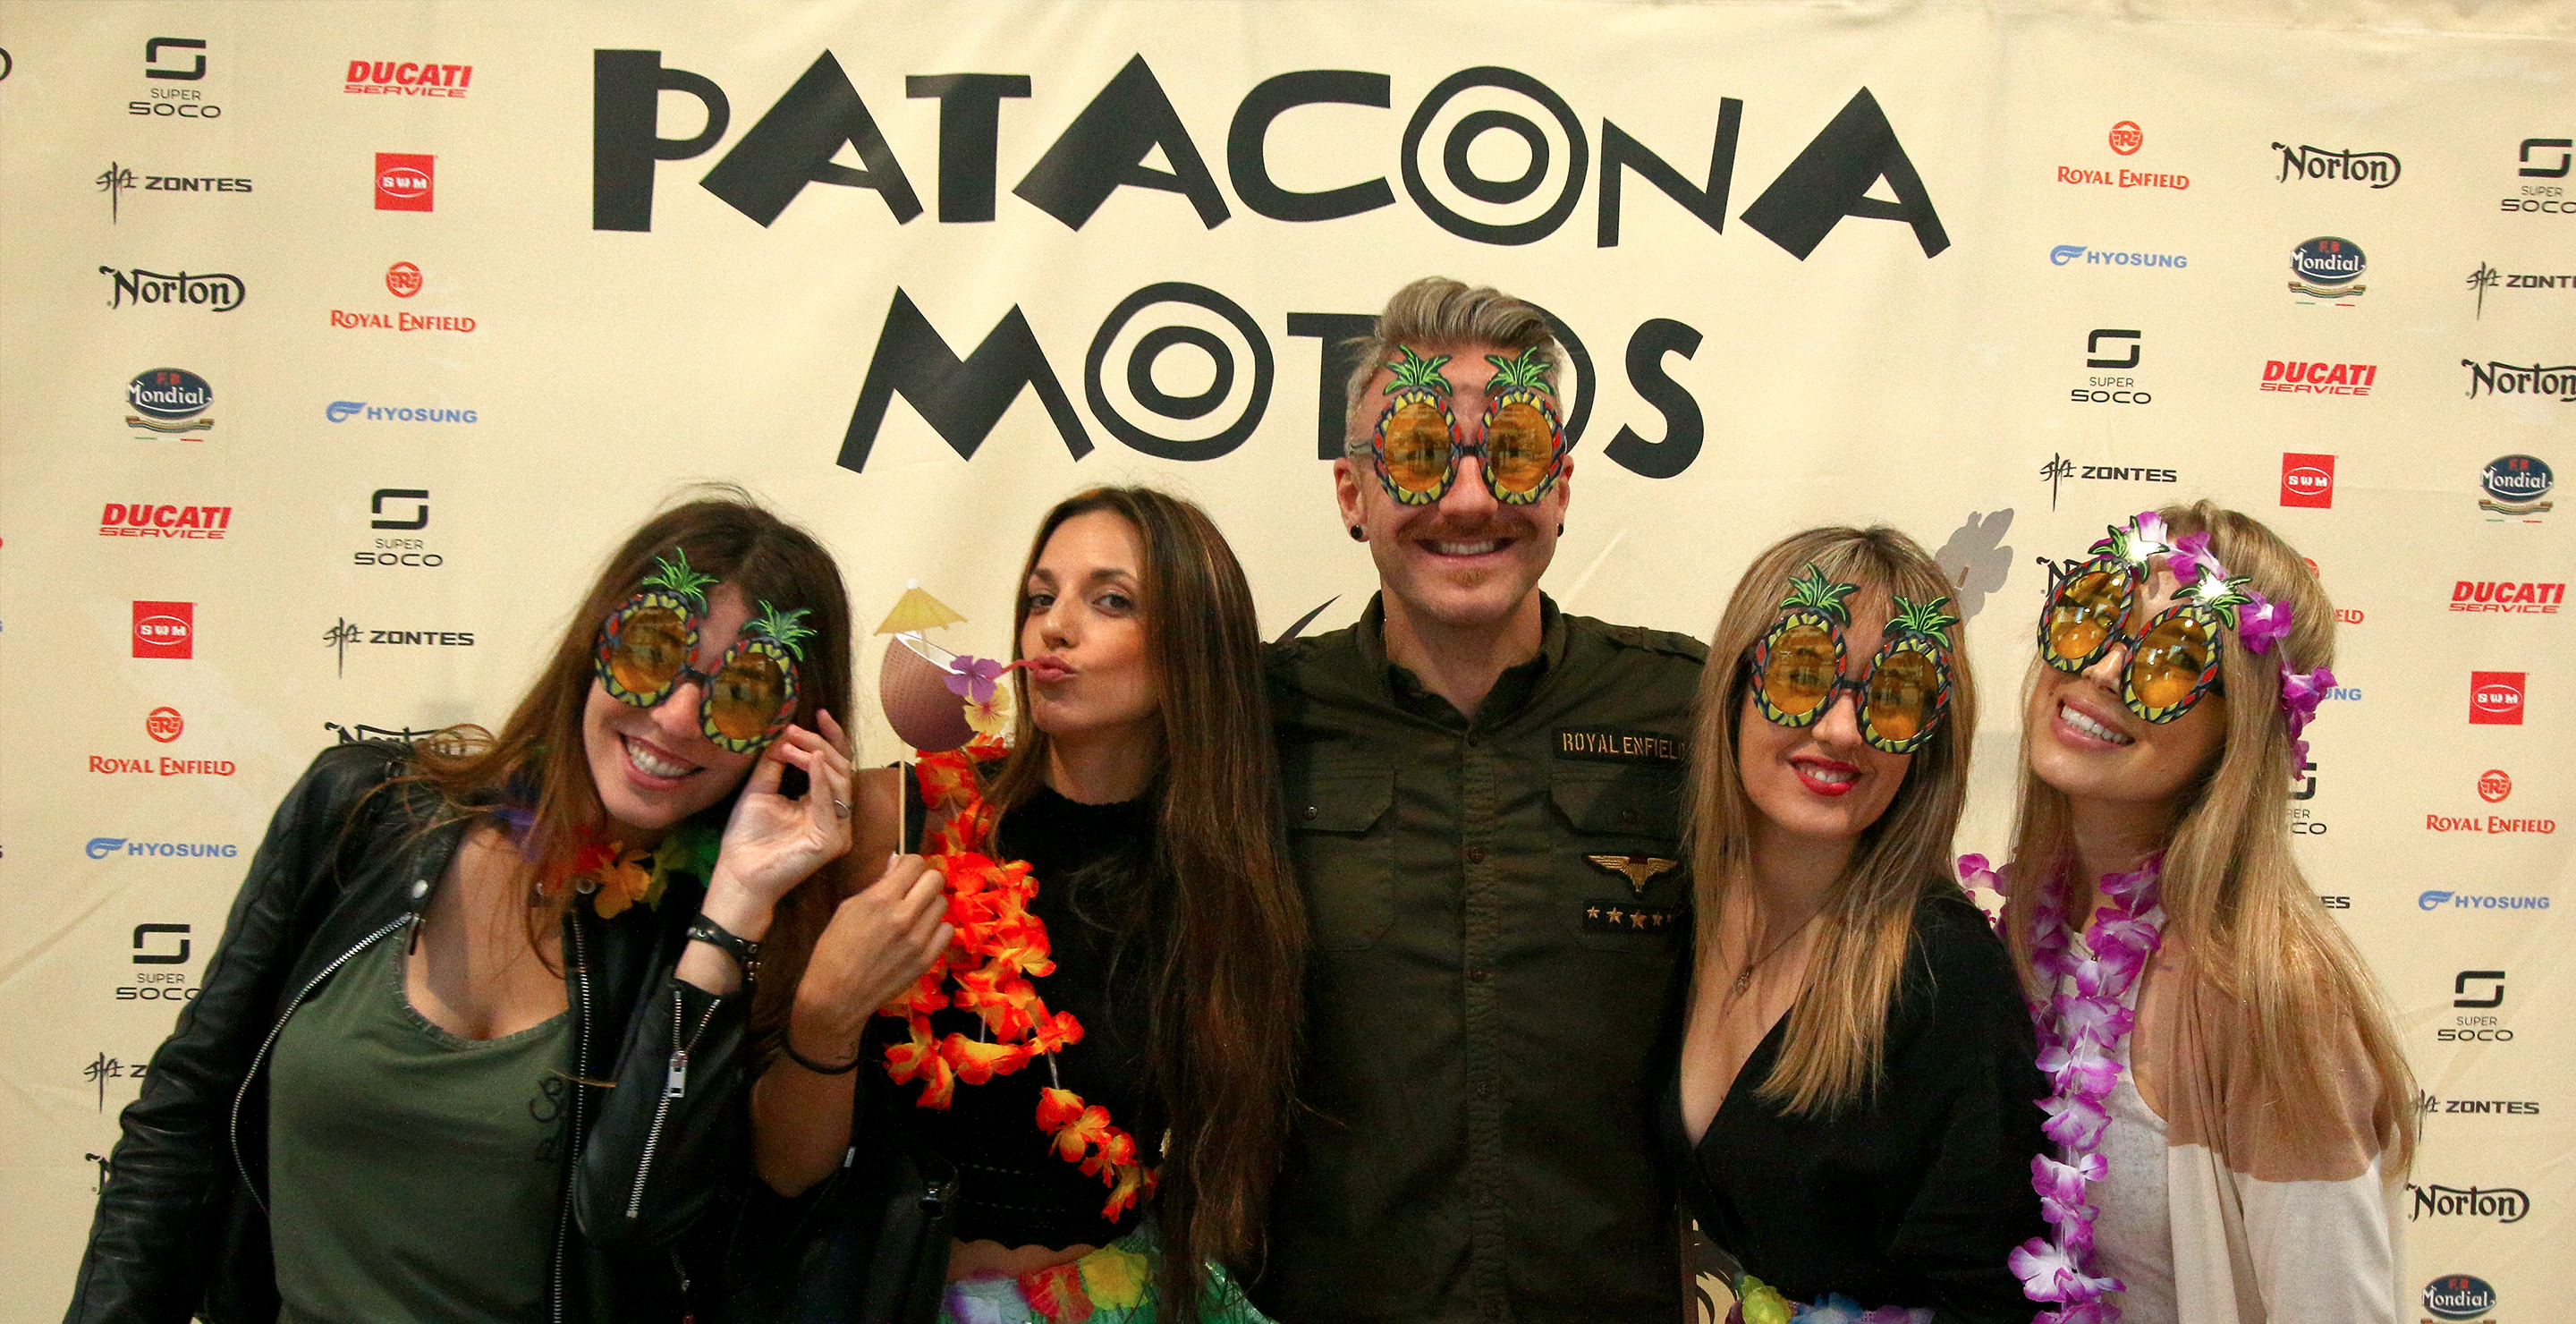 Personas posando delante de photocall de Patacona Motos